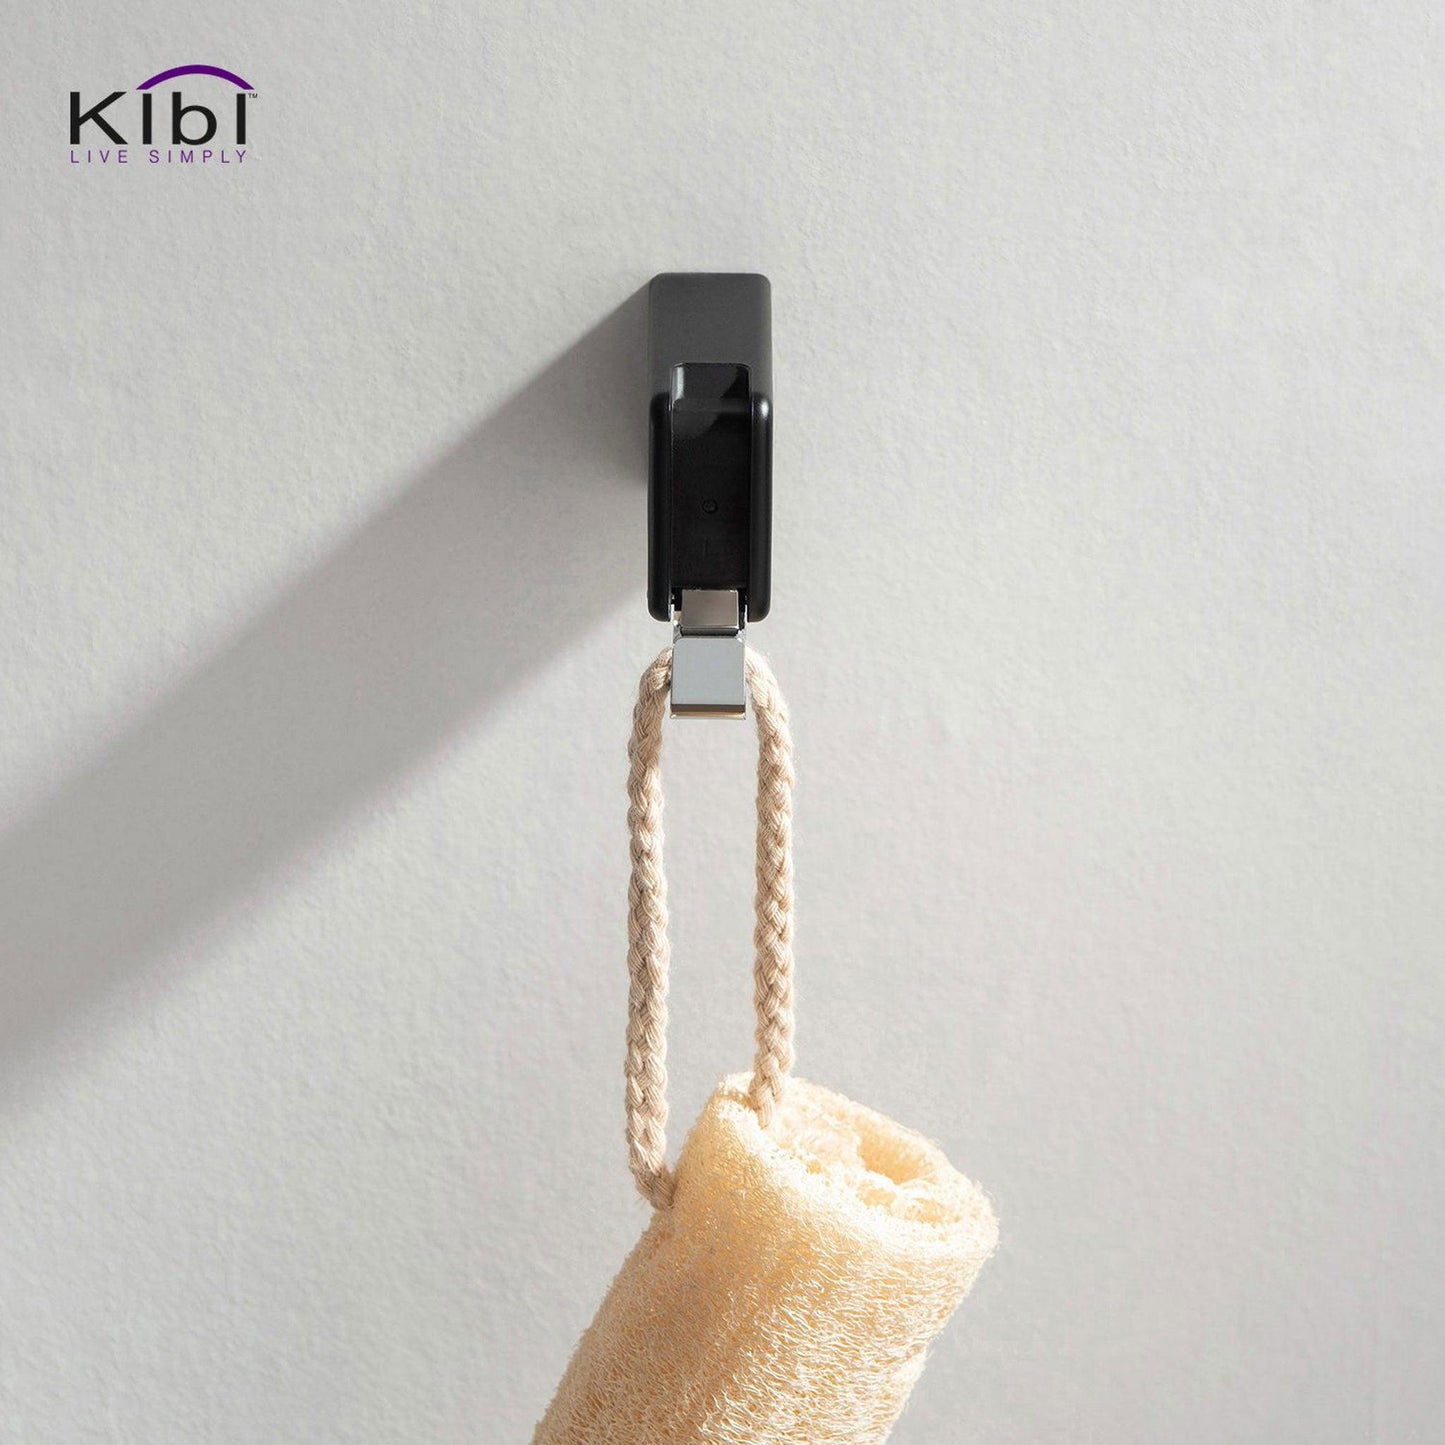 KIBI Artis Bathroom Robe Hook in Chrome Black Finish